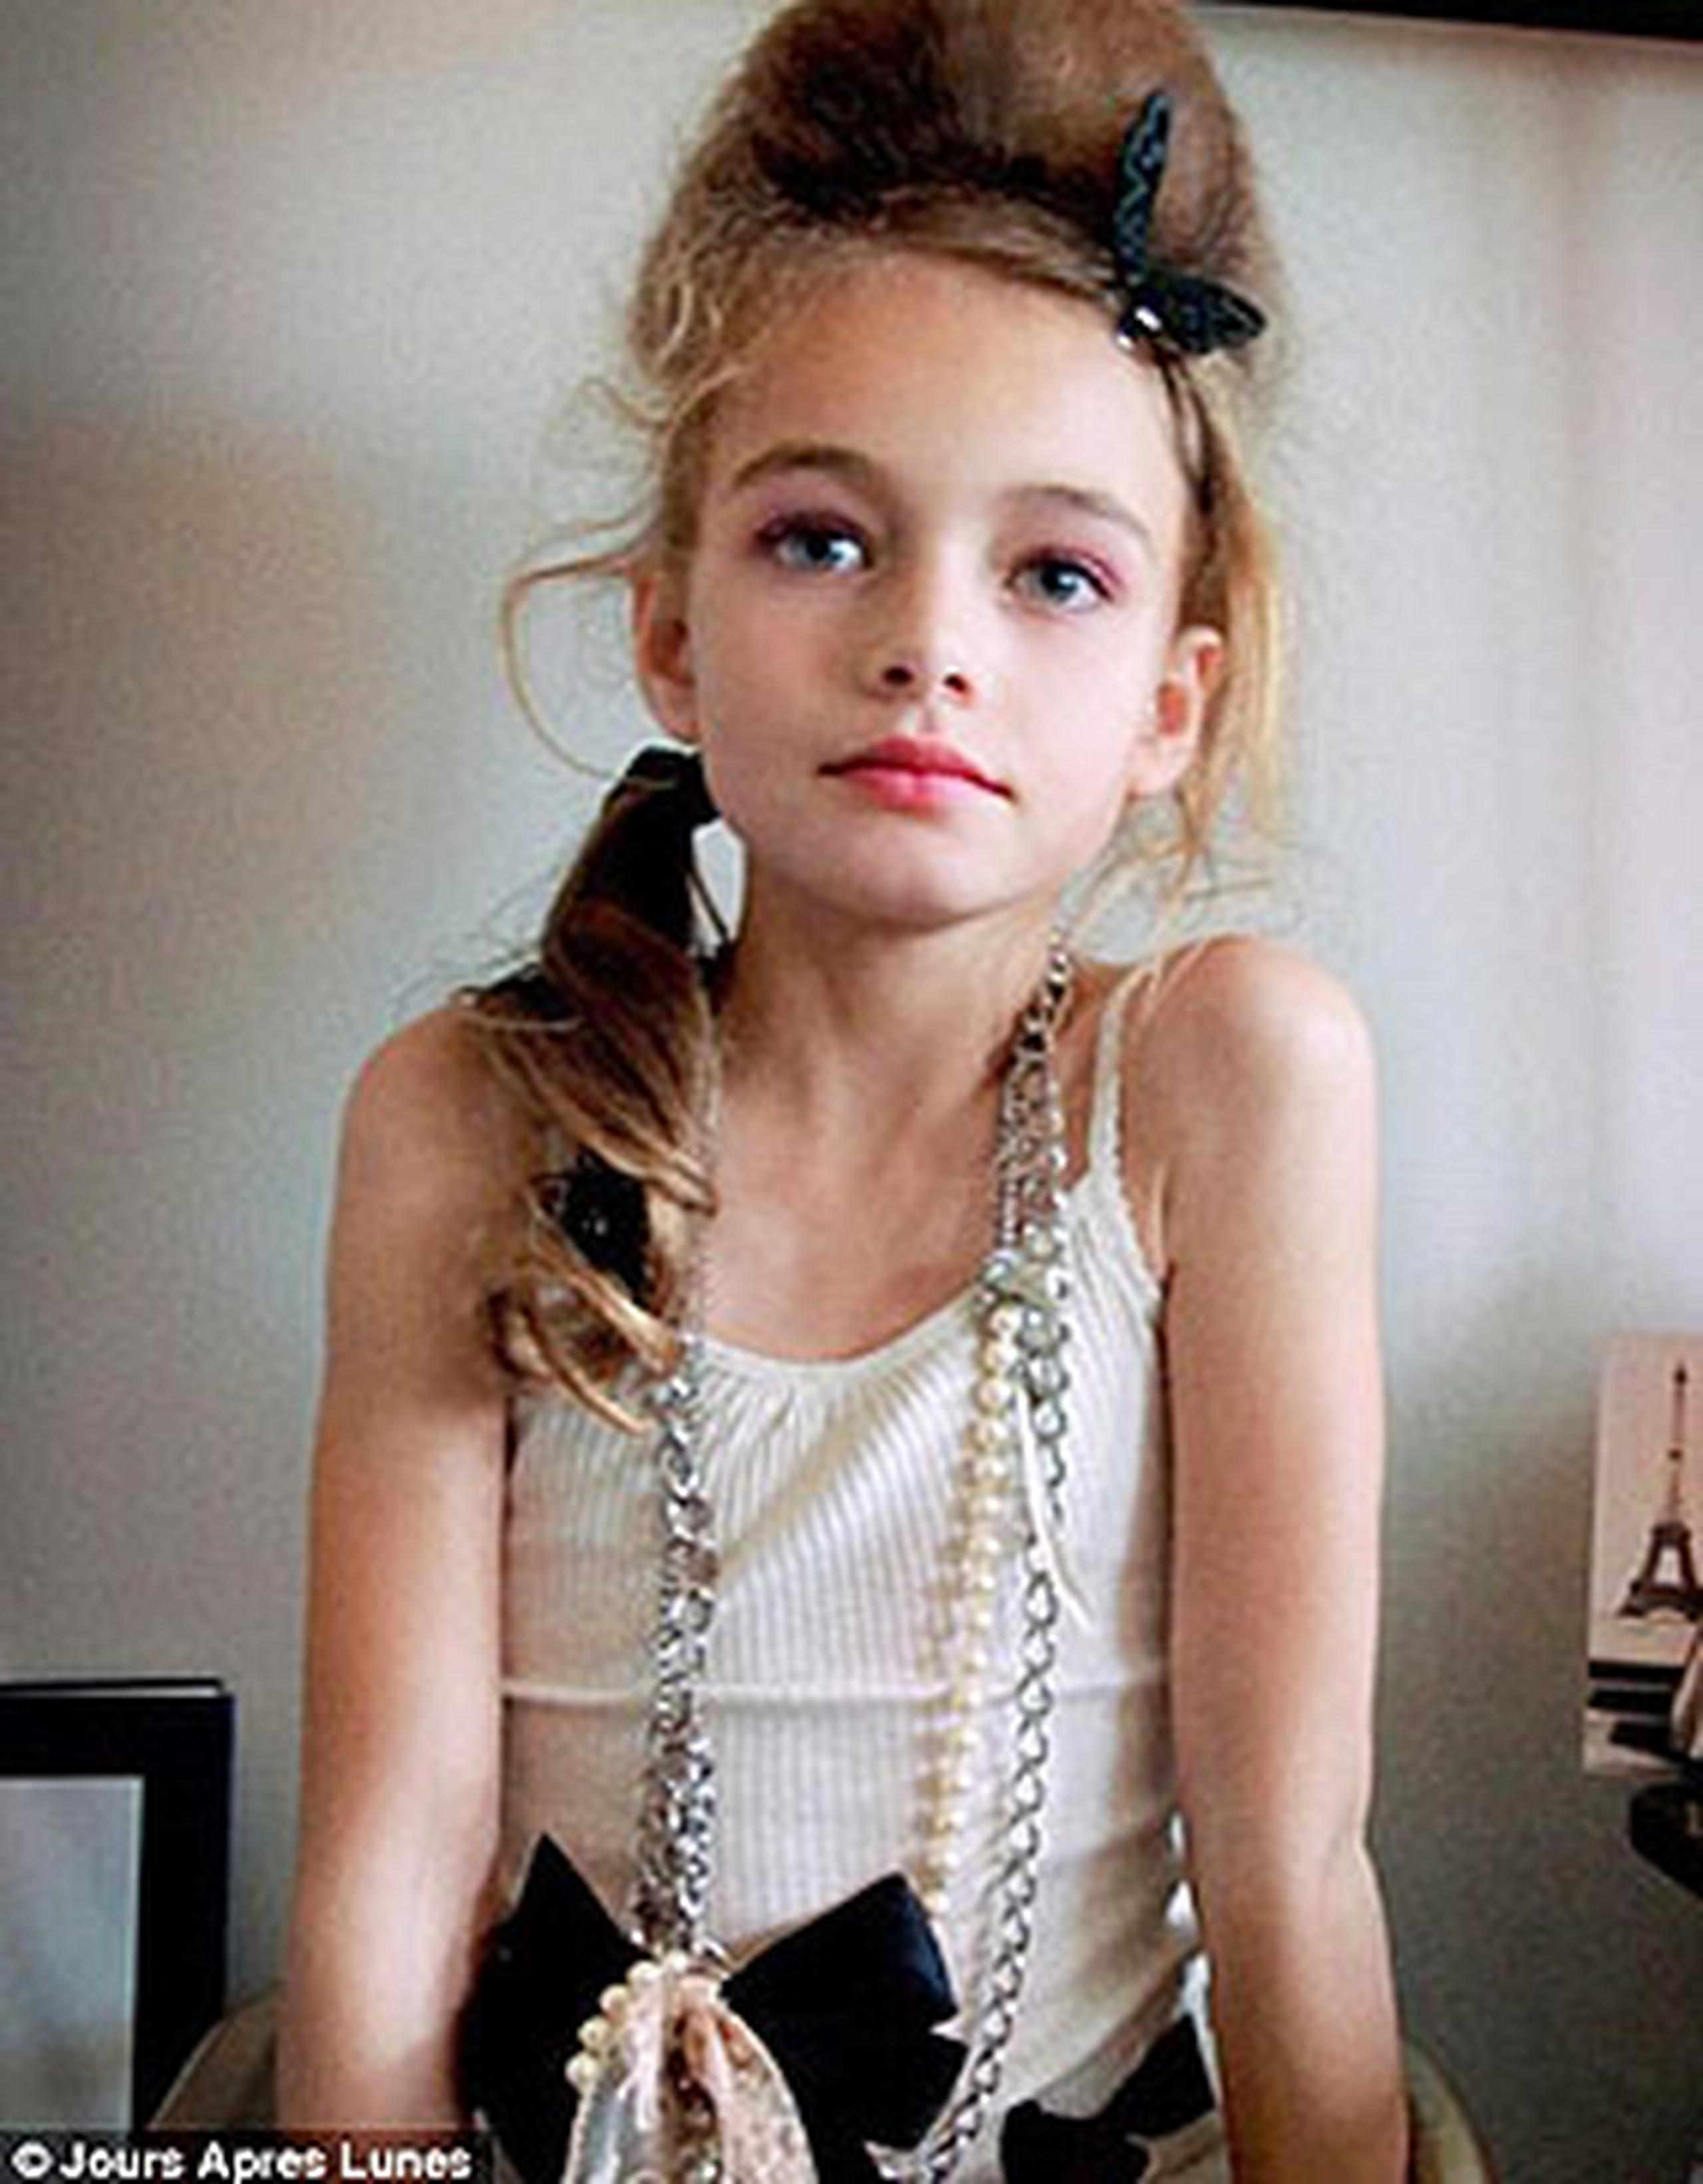 En las fotos de la promoción de la línea francesa se ven a las niñas, que no sobrepasan los 8 años de edad, maquilladas y peinadas como experimentadas modelos.  (Jours Après Lunes)